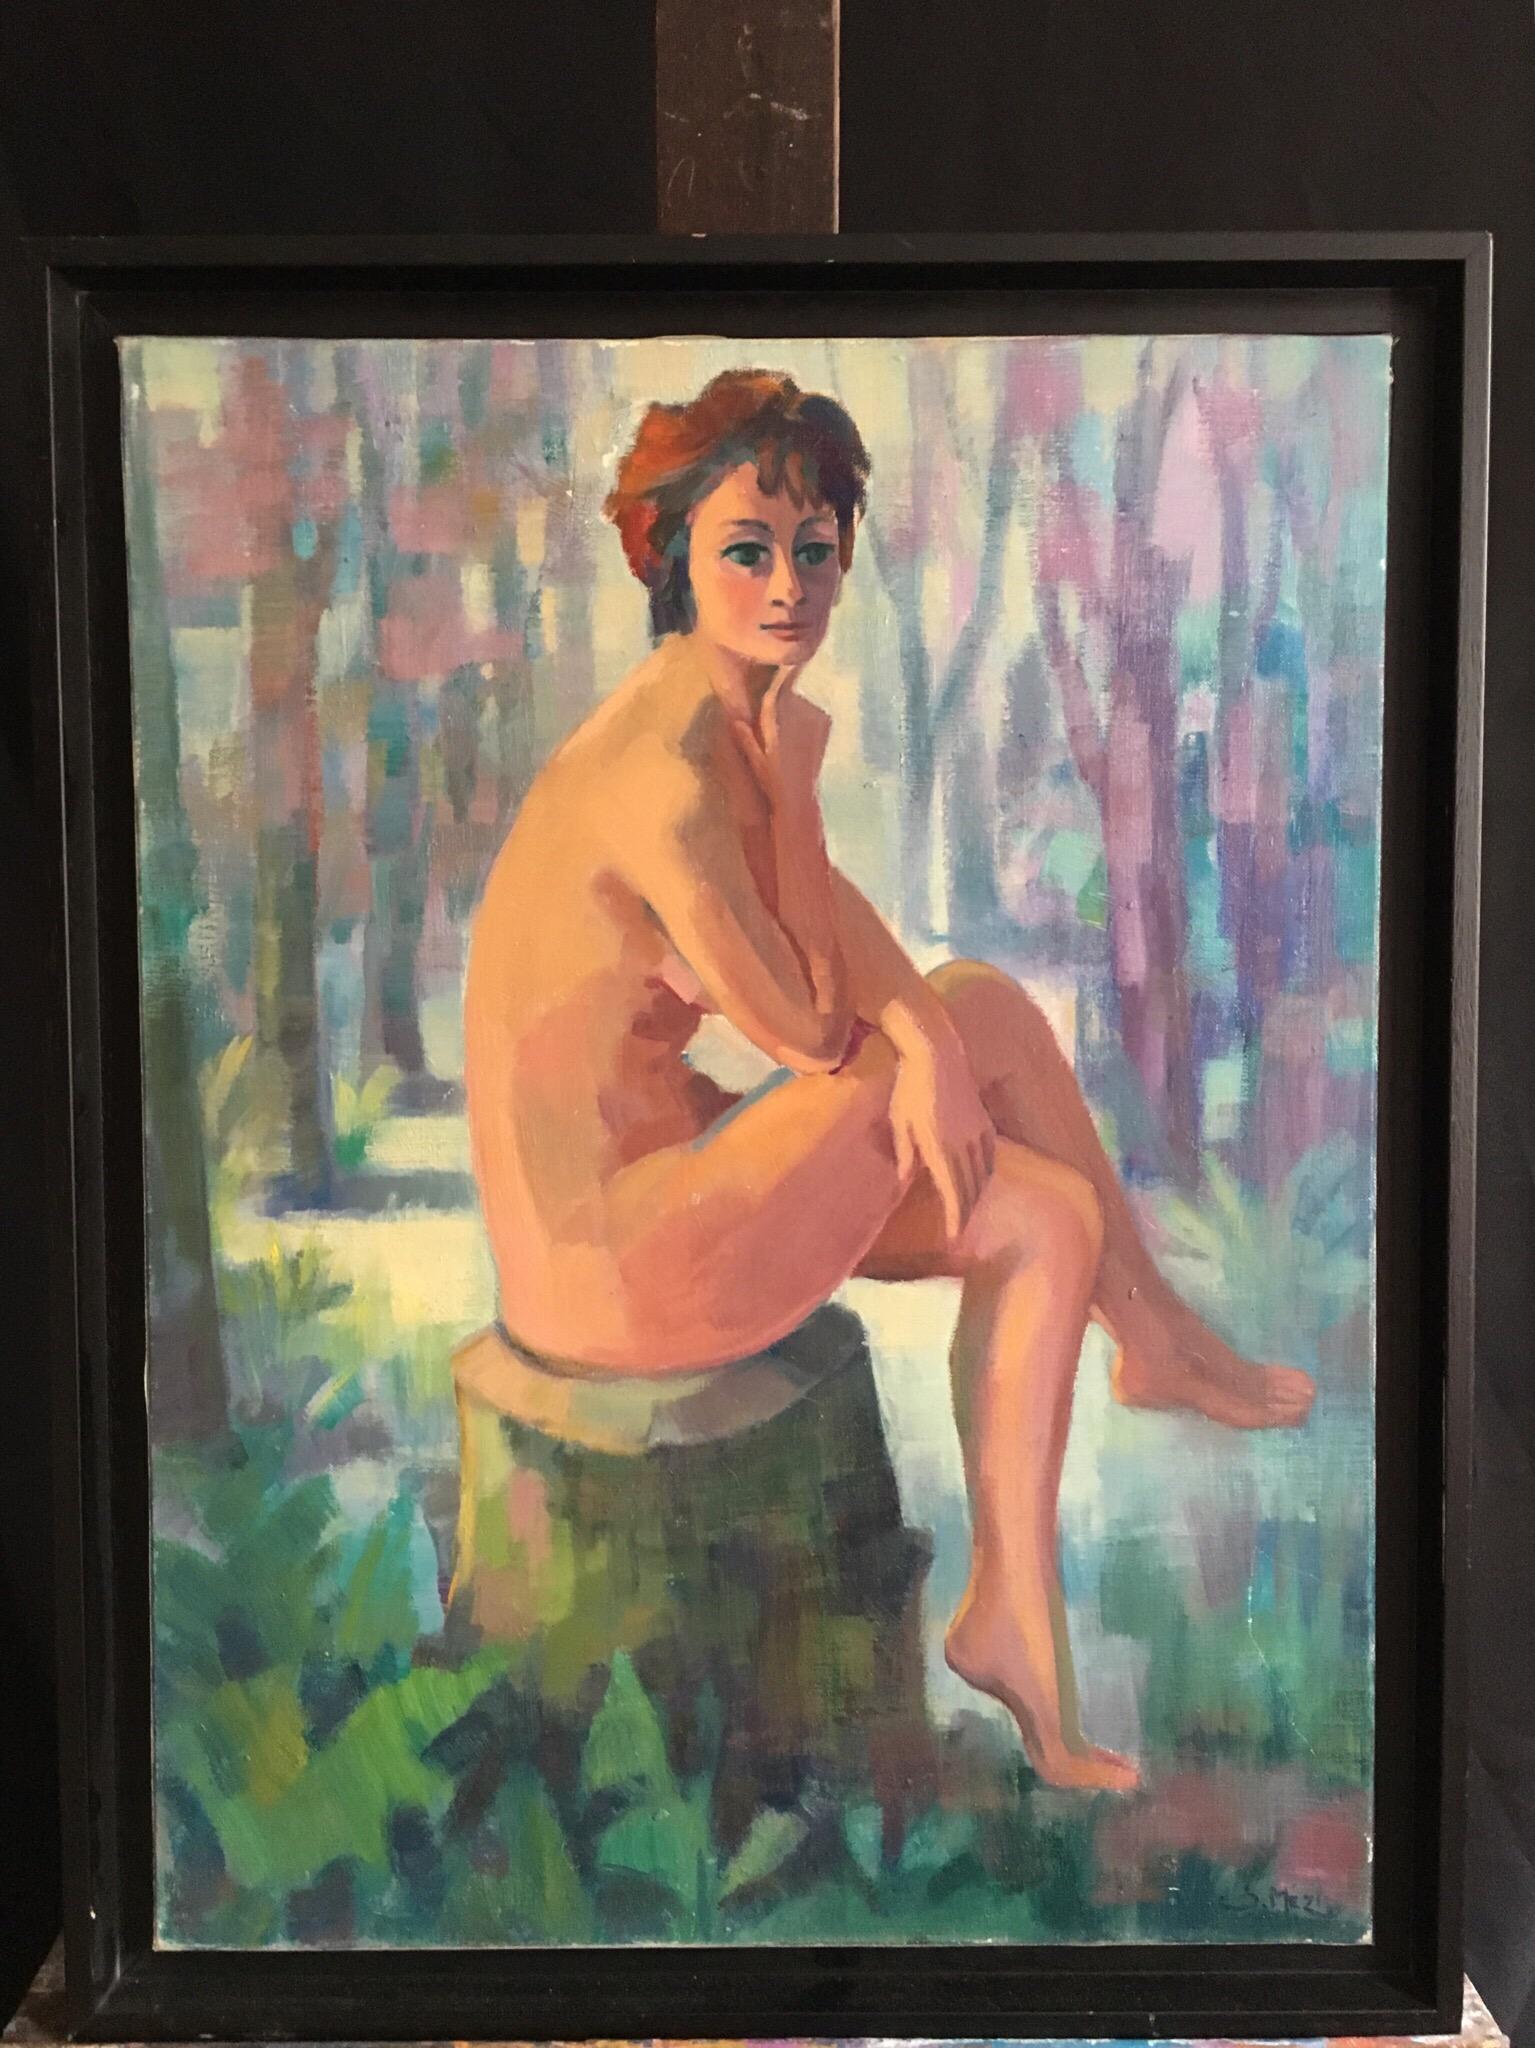 « La Femme Faune », nue, impressionniste d'une jeune femme française, signée, 1970 - Painting de Suzette Mezie